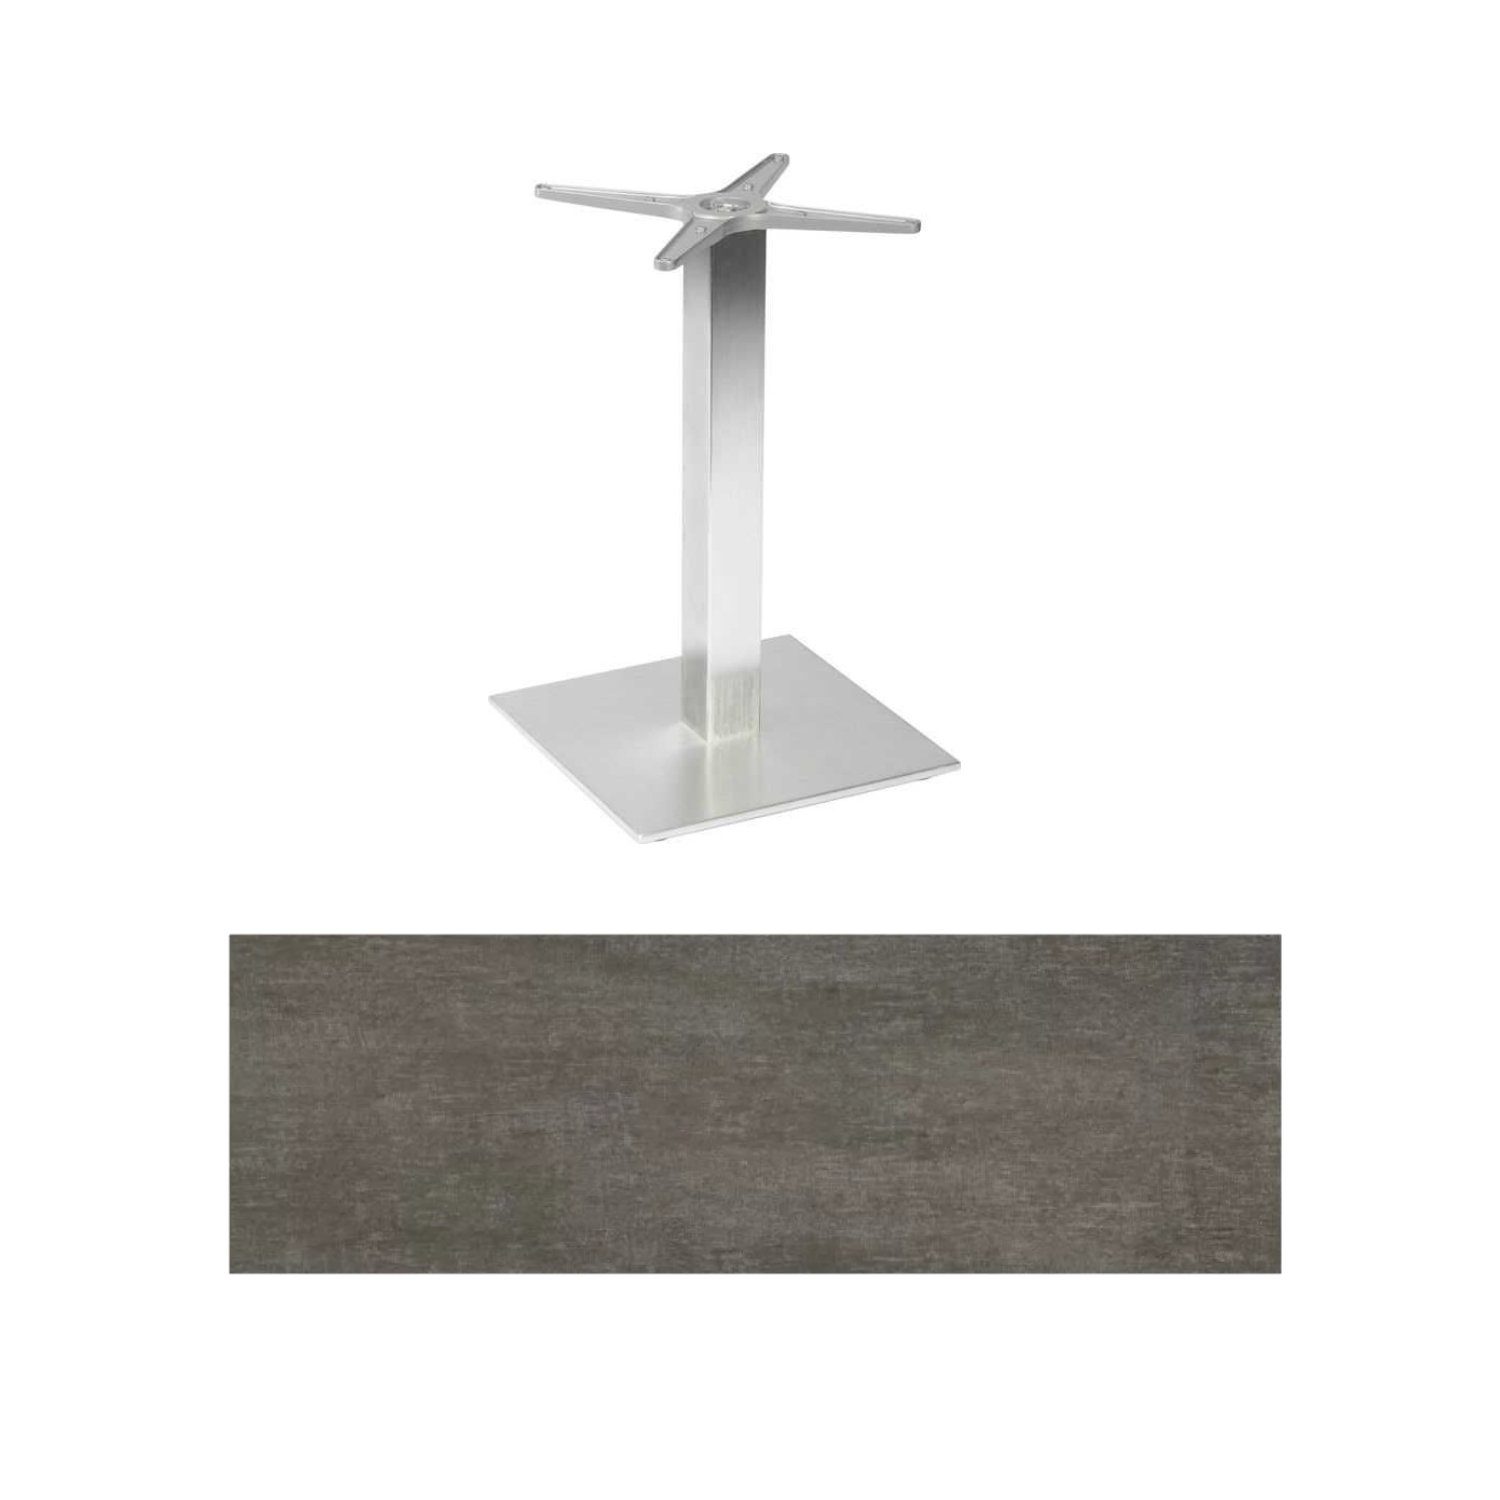 Stern "Mailand" Bistrotisch 80x80 cm, Aluminium in Edelstahloptik, Tischplatte HPL Metallic Grau